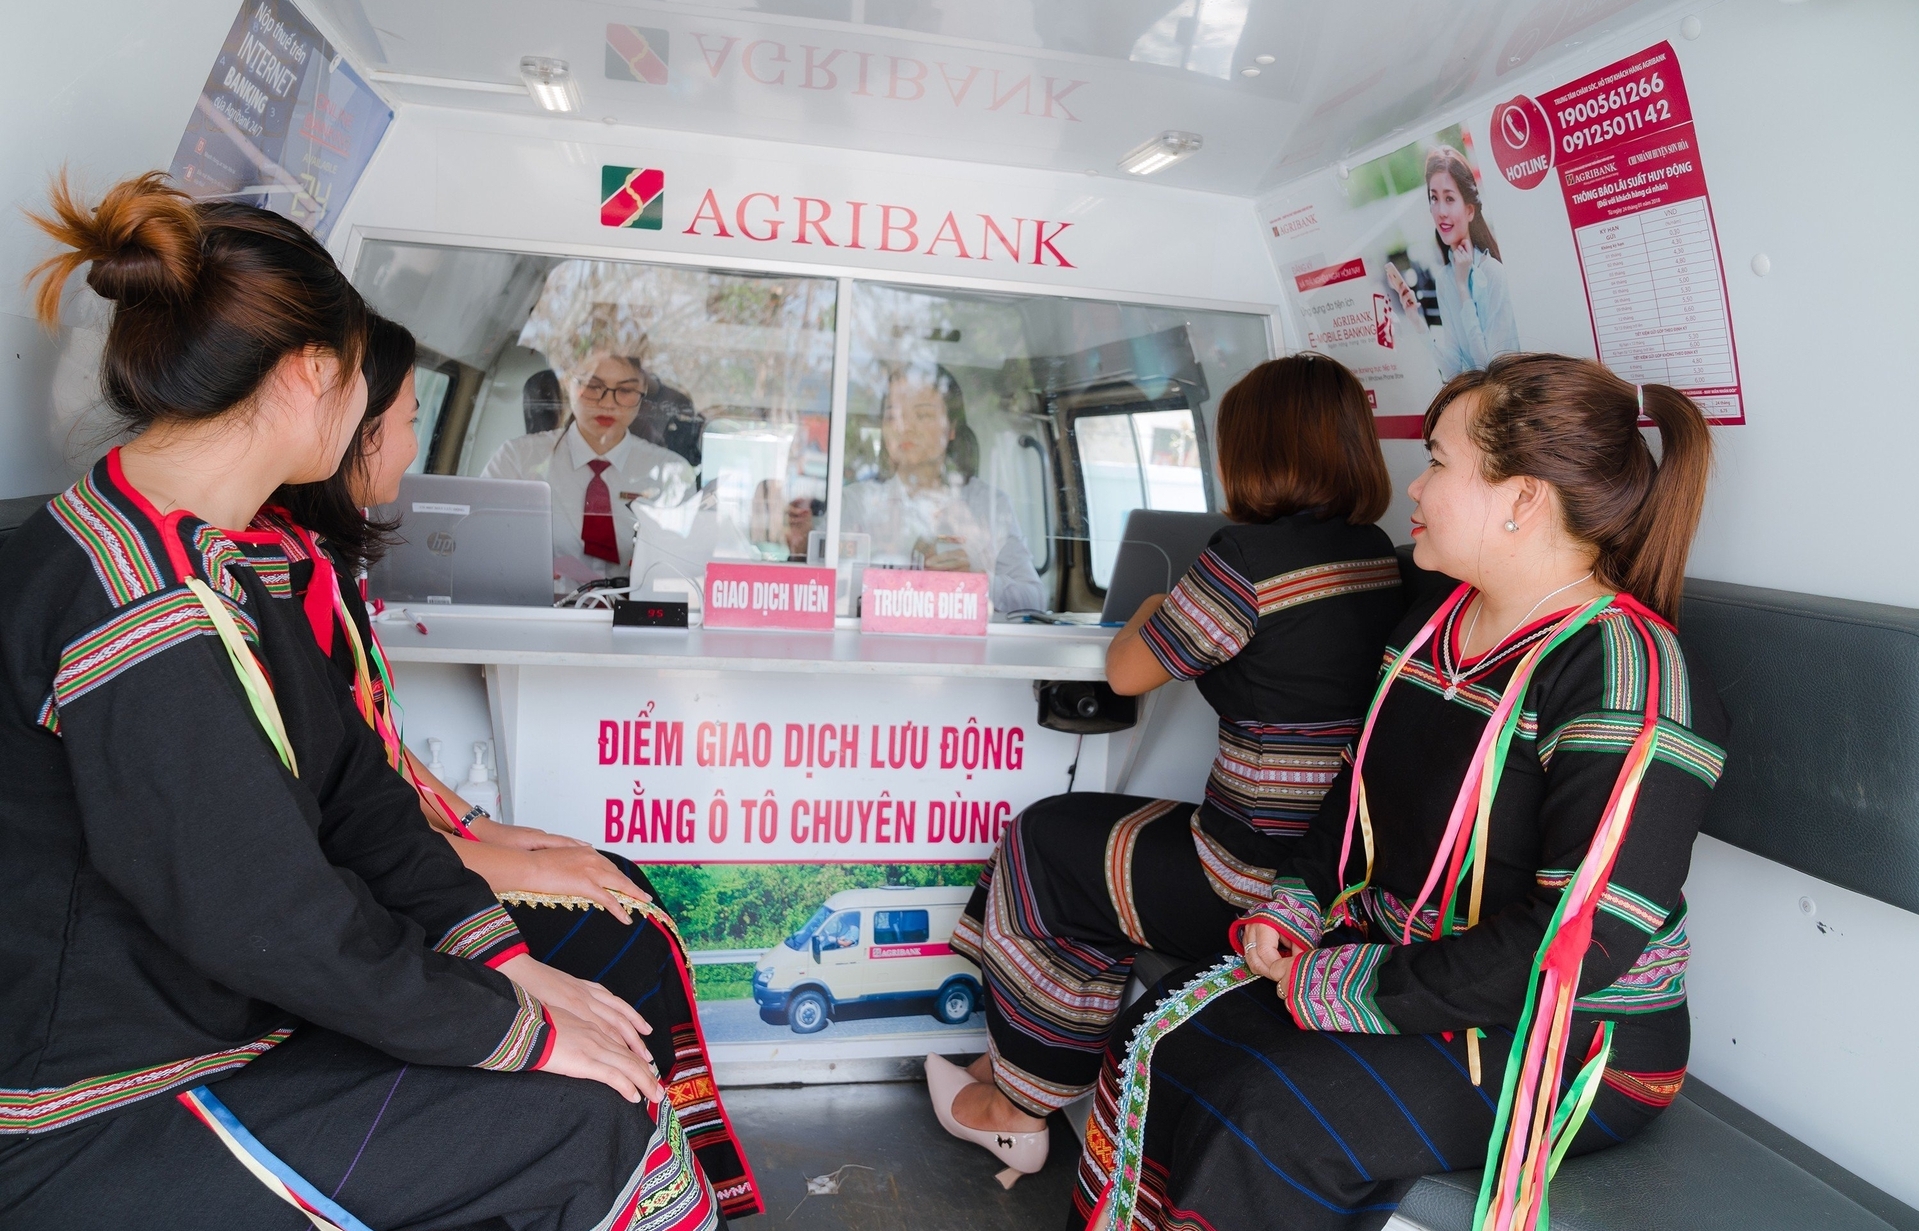 Agribank Phú Yên mở thêm nhiều điểm giao dịch bằng xe lưu động tại các xã miền núi. Ảnh: A Liêu.